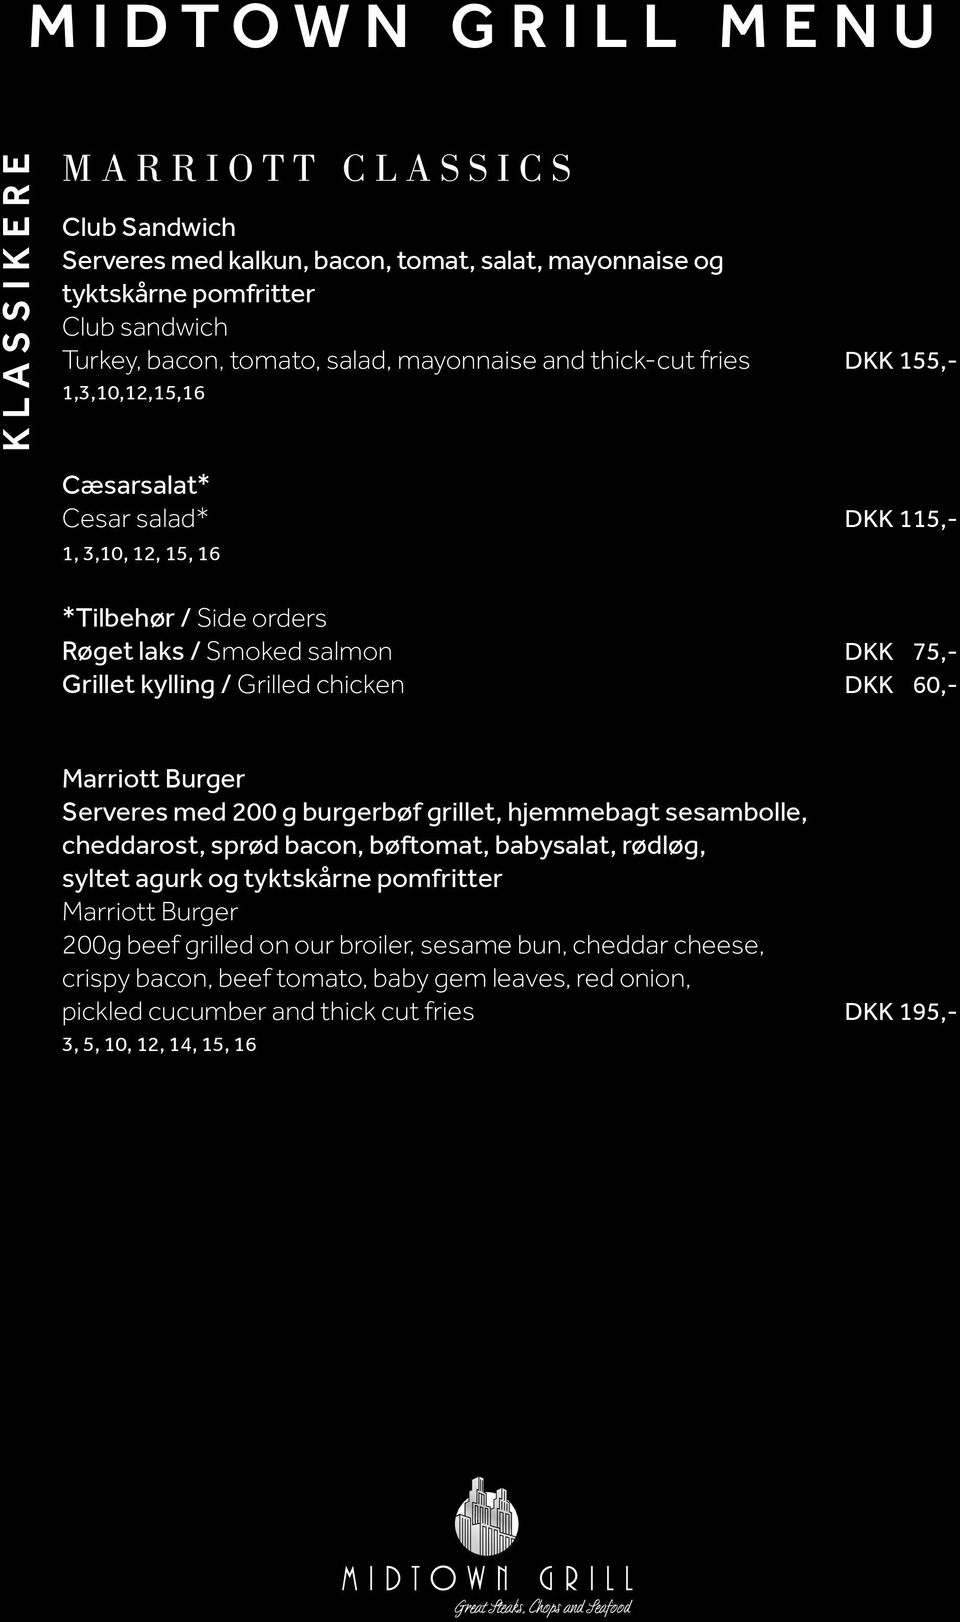 chicken DKK 60,- Marriott Burger Serveres med 200 g burgerbøf grillet, hjemmebagt sesambolle, cheddarost, sprød bacon, bøftomat, babysalat, rødløg, syltet agurk og tyktskårne pomfritter